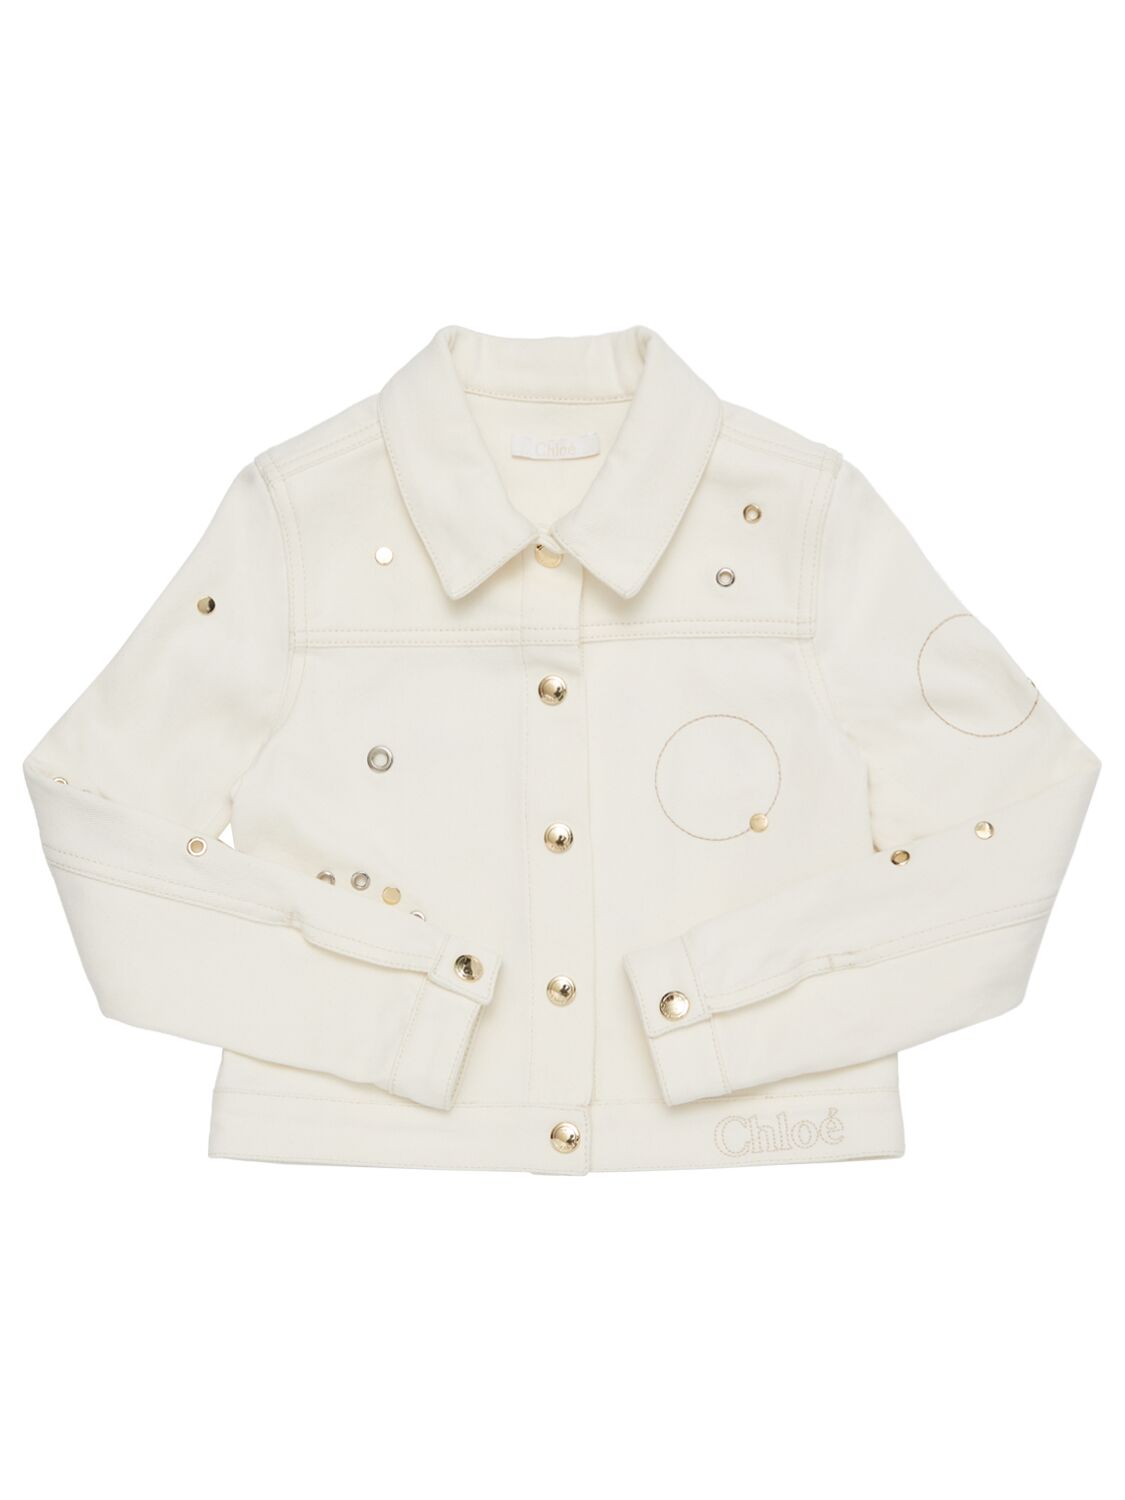 Chloé Kids' Cotton Denim Jacket In Cream